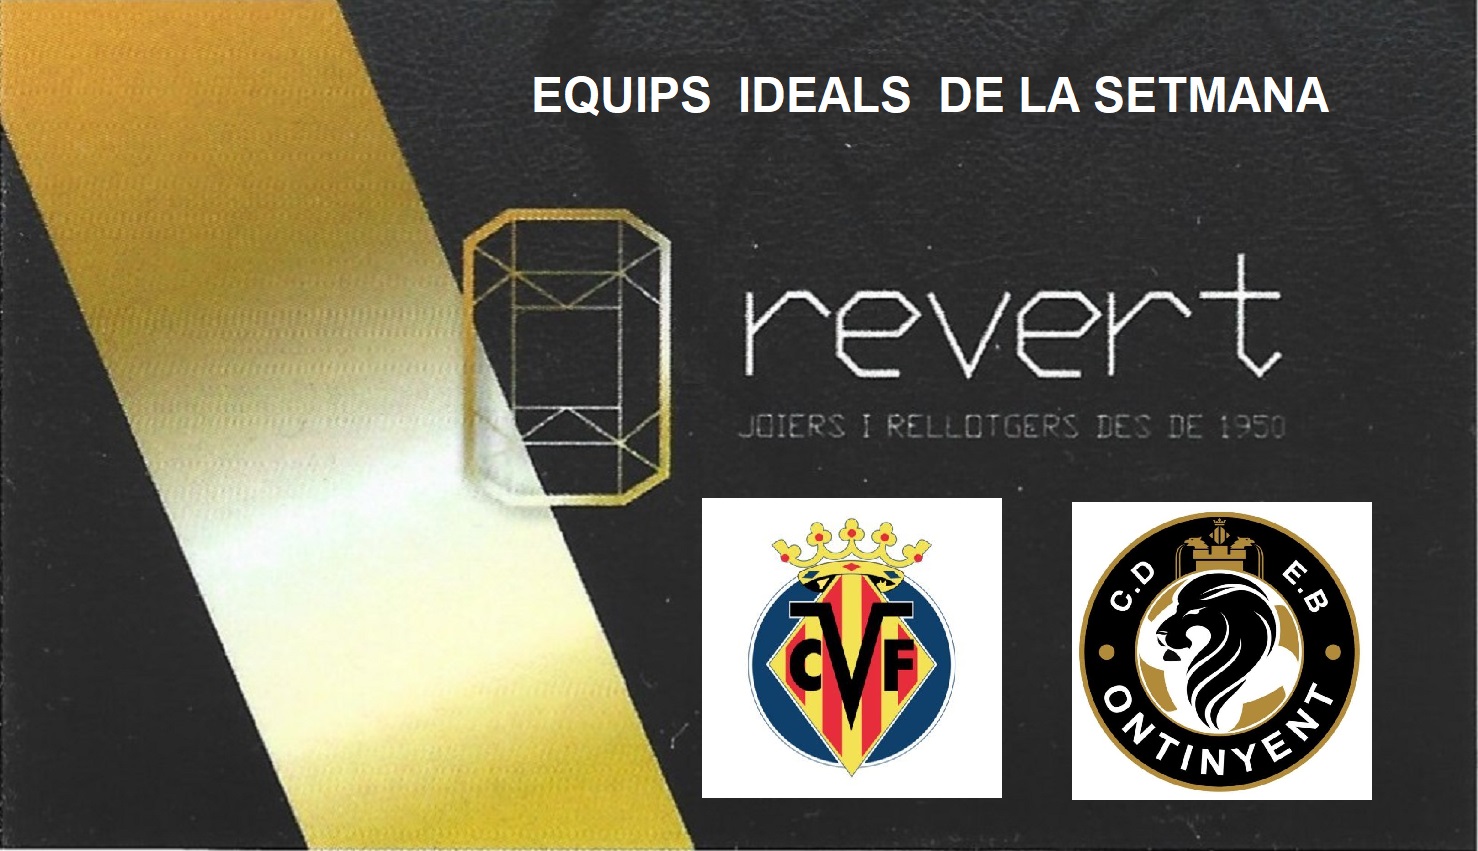 Els equips ideals del cap de setmana amb la Joieria Revert